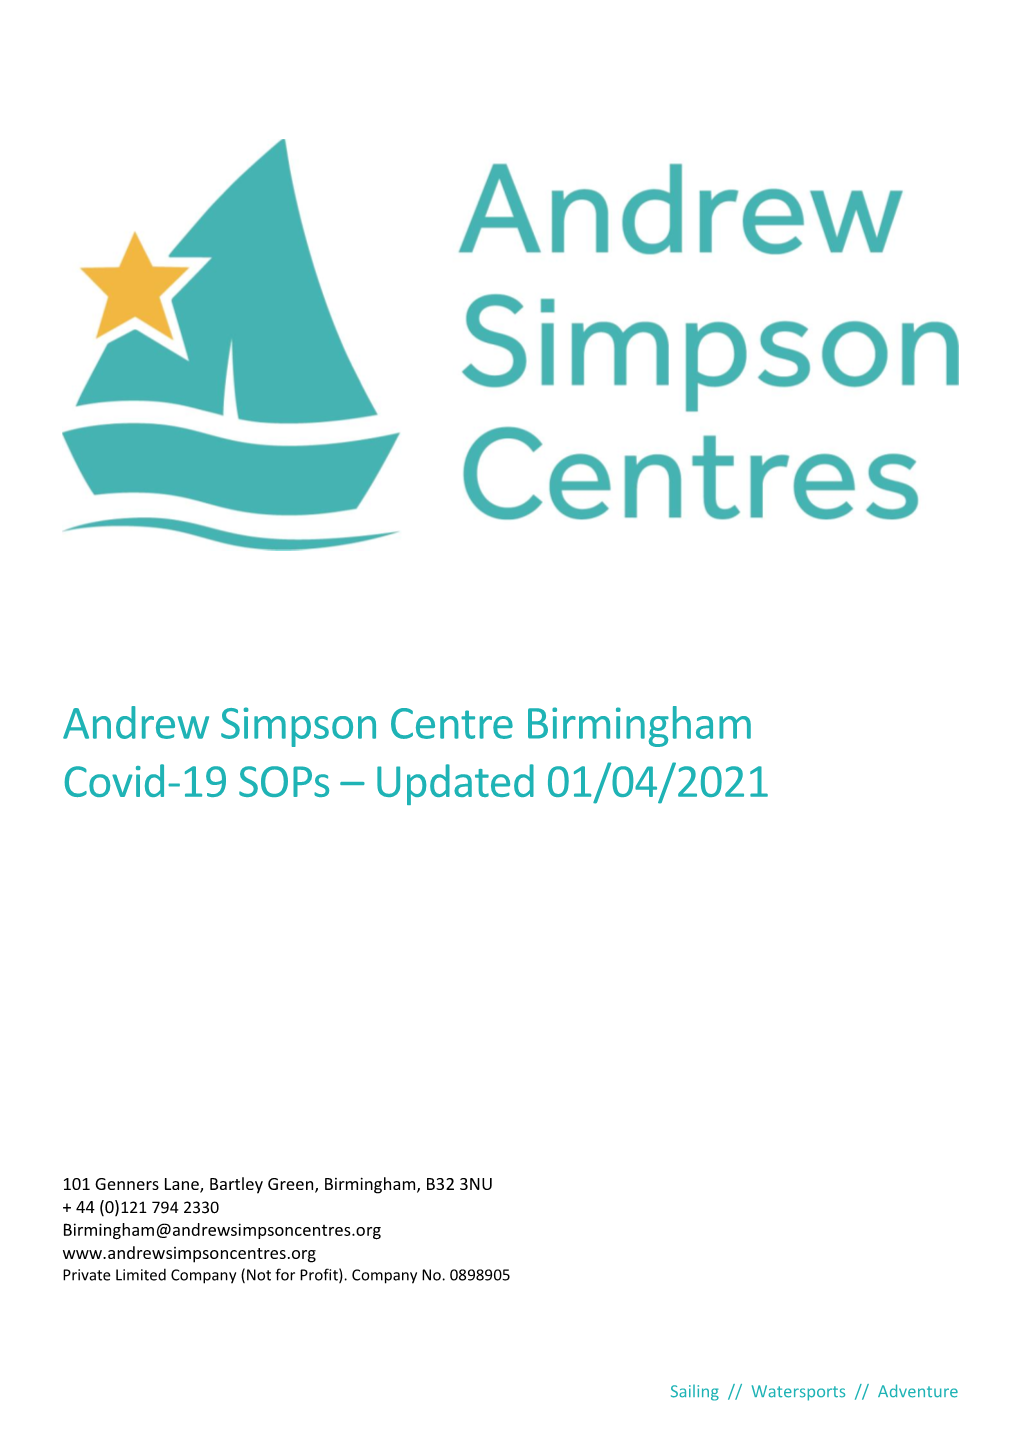 Andrew Simpson Centre Birmingham Covid-19 Sops – Updated 01/04/2021